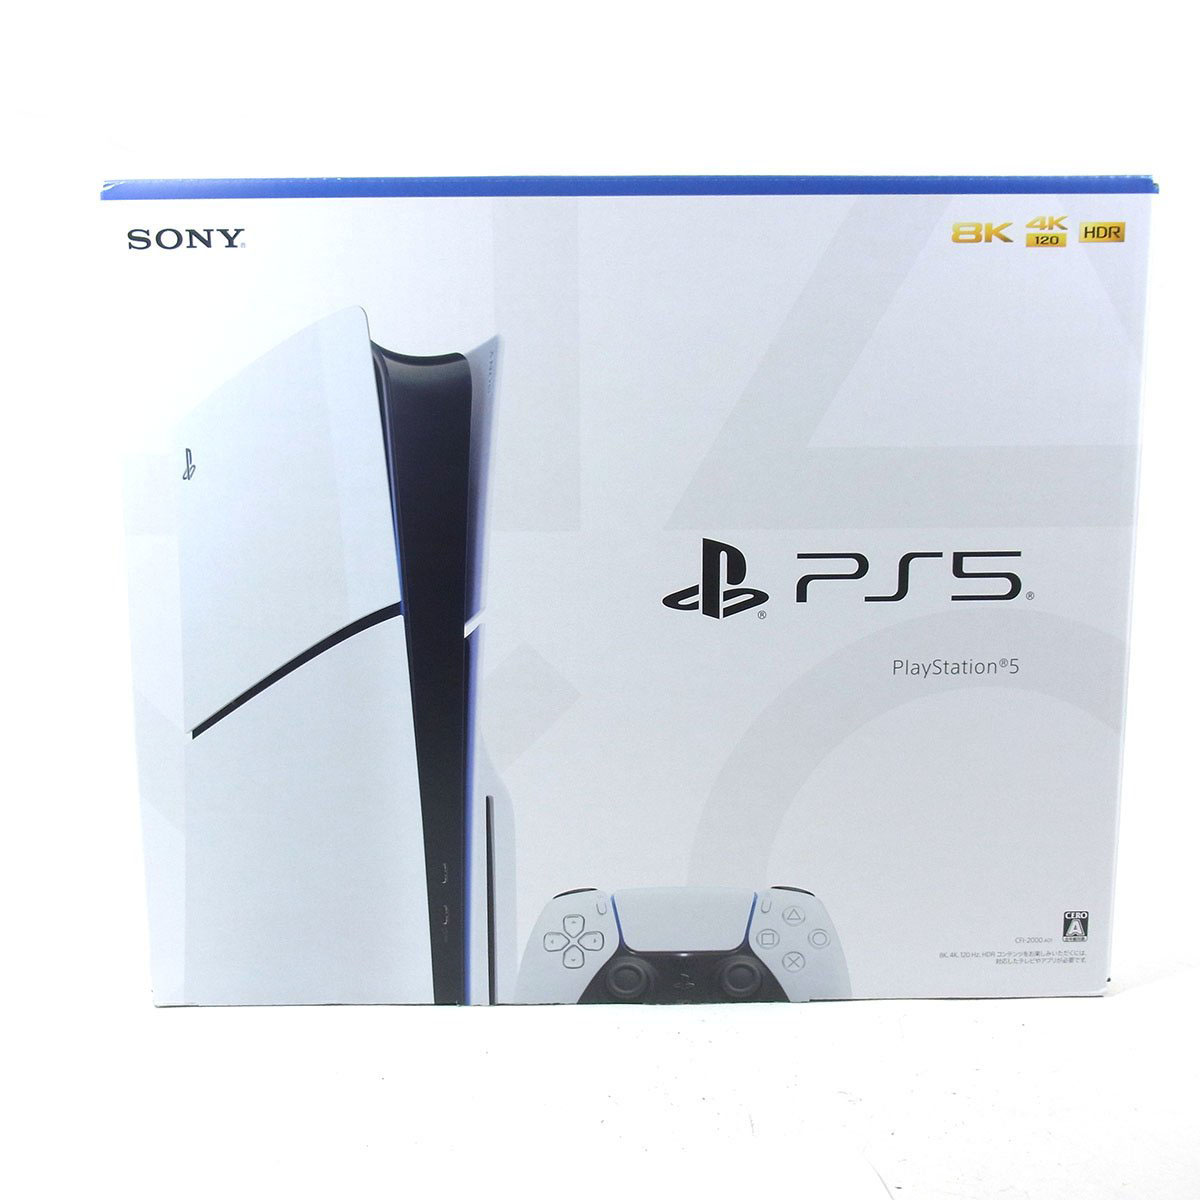 専門店では SONY CFI-1000A01 ps5本体ディスク版 PlayStation5 